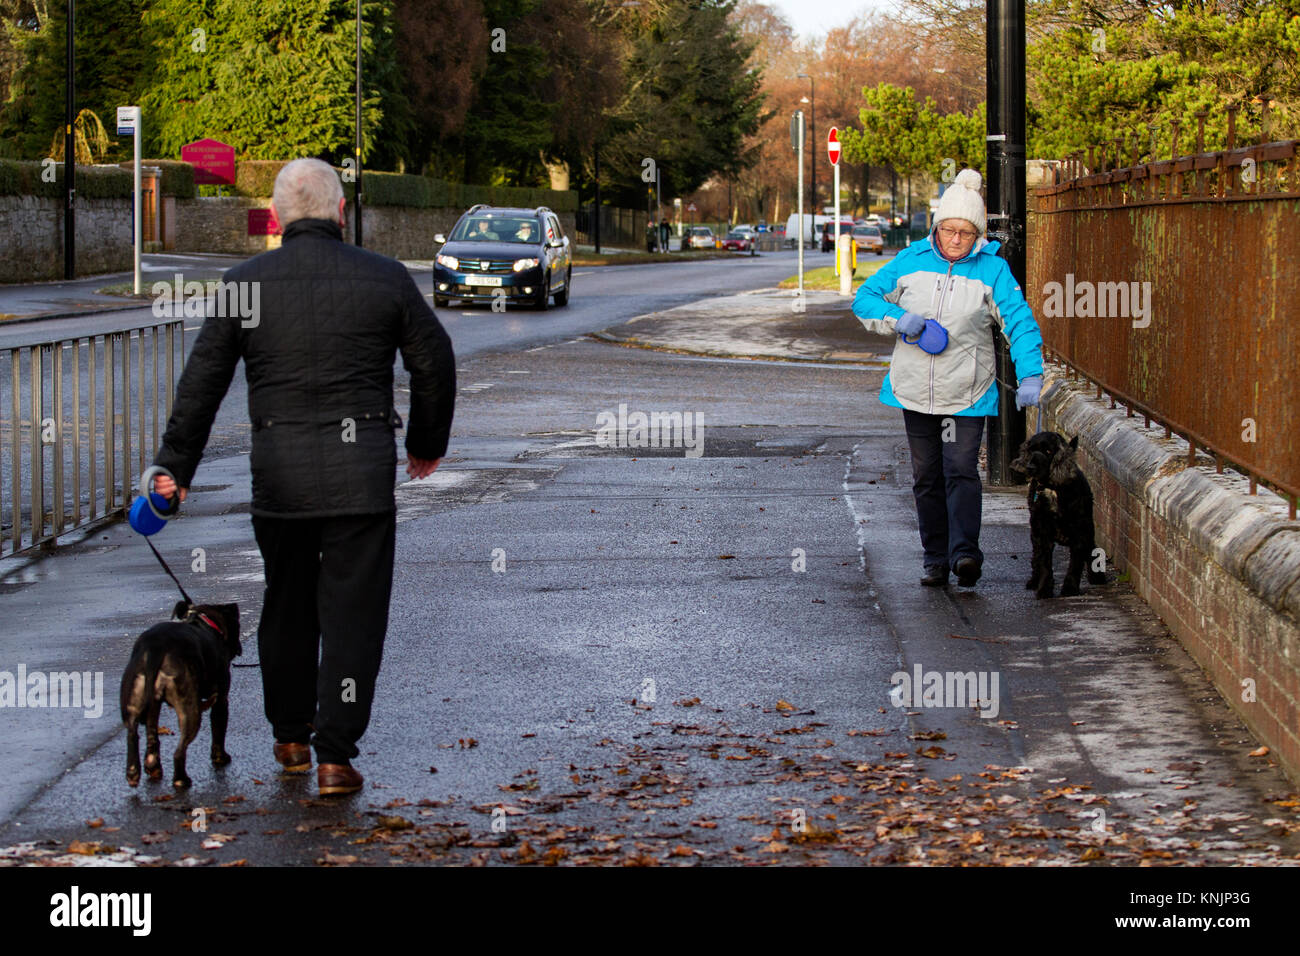 Dundee, Großbritannien. 12. Dezember, 2017. UK Wetter: Während die meisten Großbritannien Schnee Schneestürme gehabt hat, Tayside hat kalte eisige Wetter mit hazy Sonnenschein mit Temperaturen unter dem Gefrierpunkt (-1°C). Hund Spaziergänger trotzen der Kälte ihre Hunde nehmen für einen Spaziergang entlang der MacAlpine Straße in Dundee. Credits: Dundee Photographics/Alamy leben Nachrichten Stockfoto